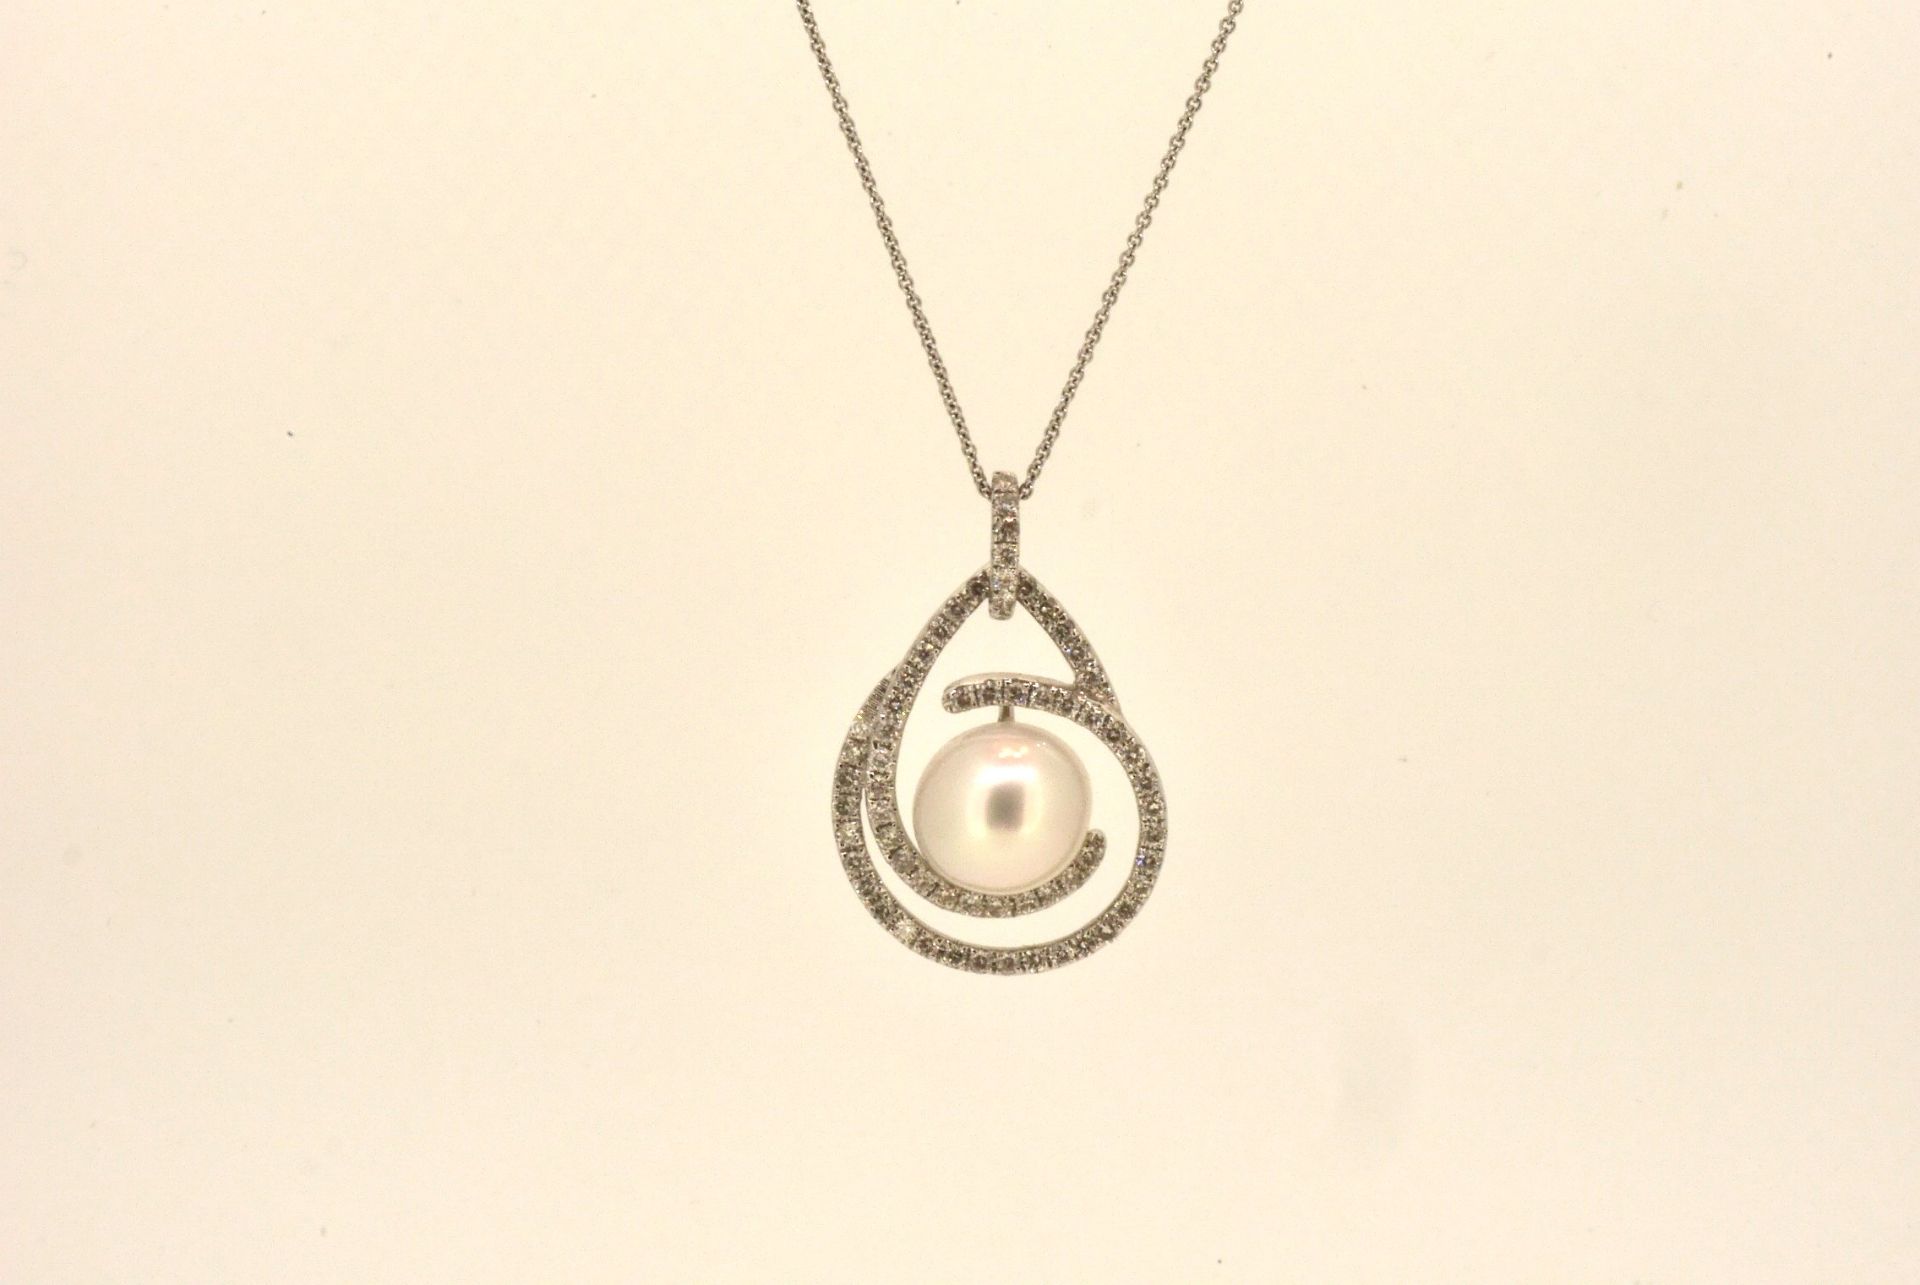 Collier WG 750, Diamanten ca. 0.70 ct, Südsee-Perle, 48 cm - Bild 2 aus 4